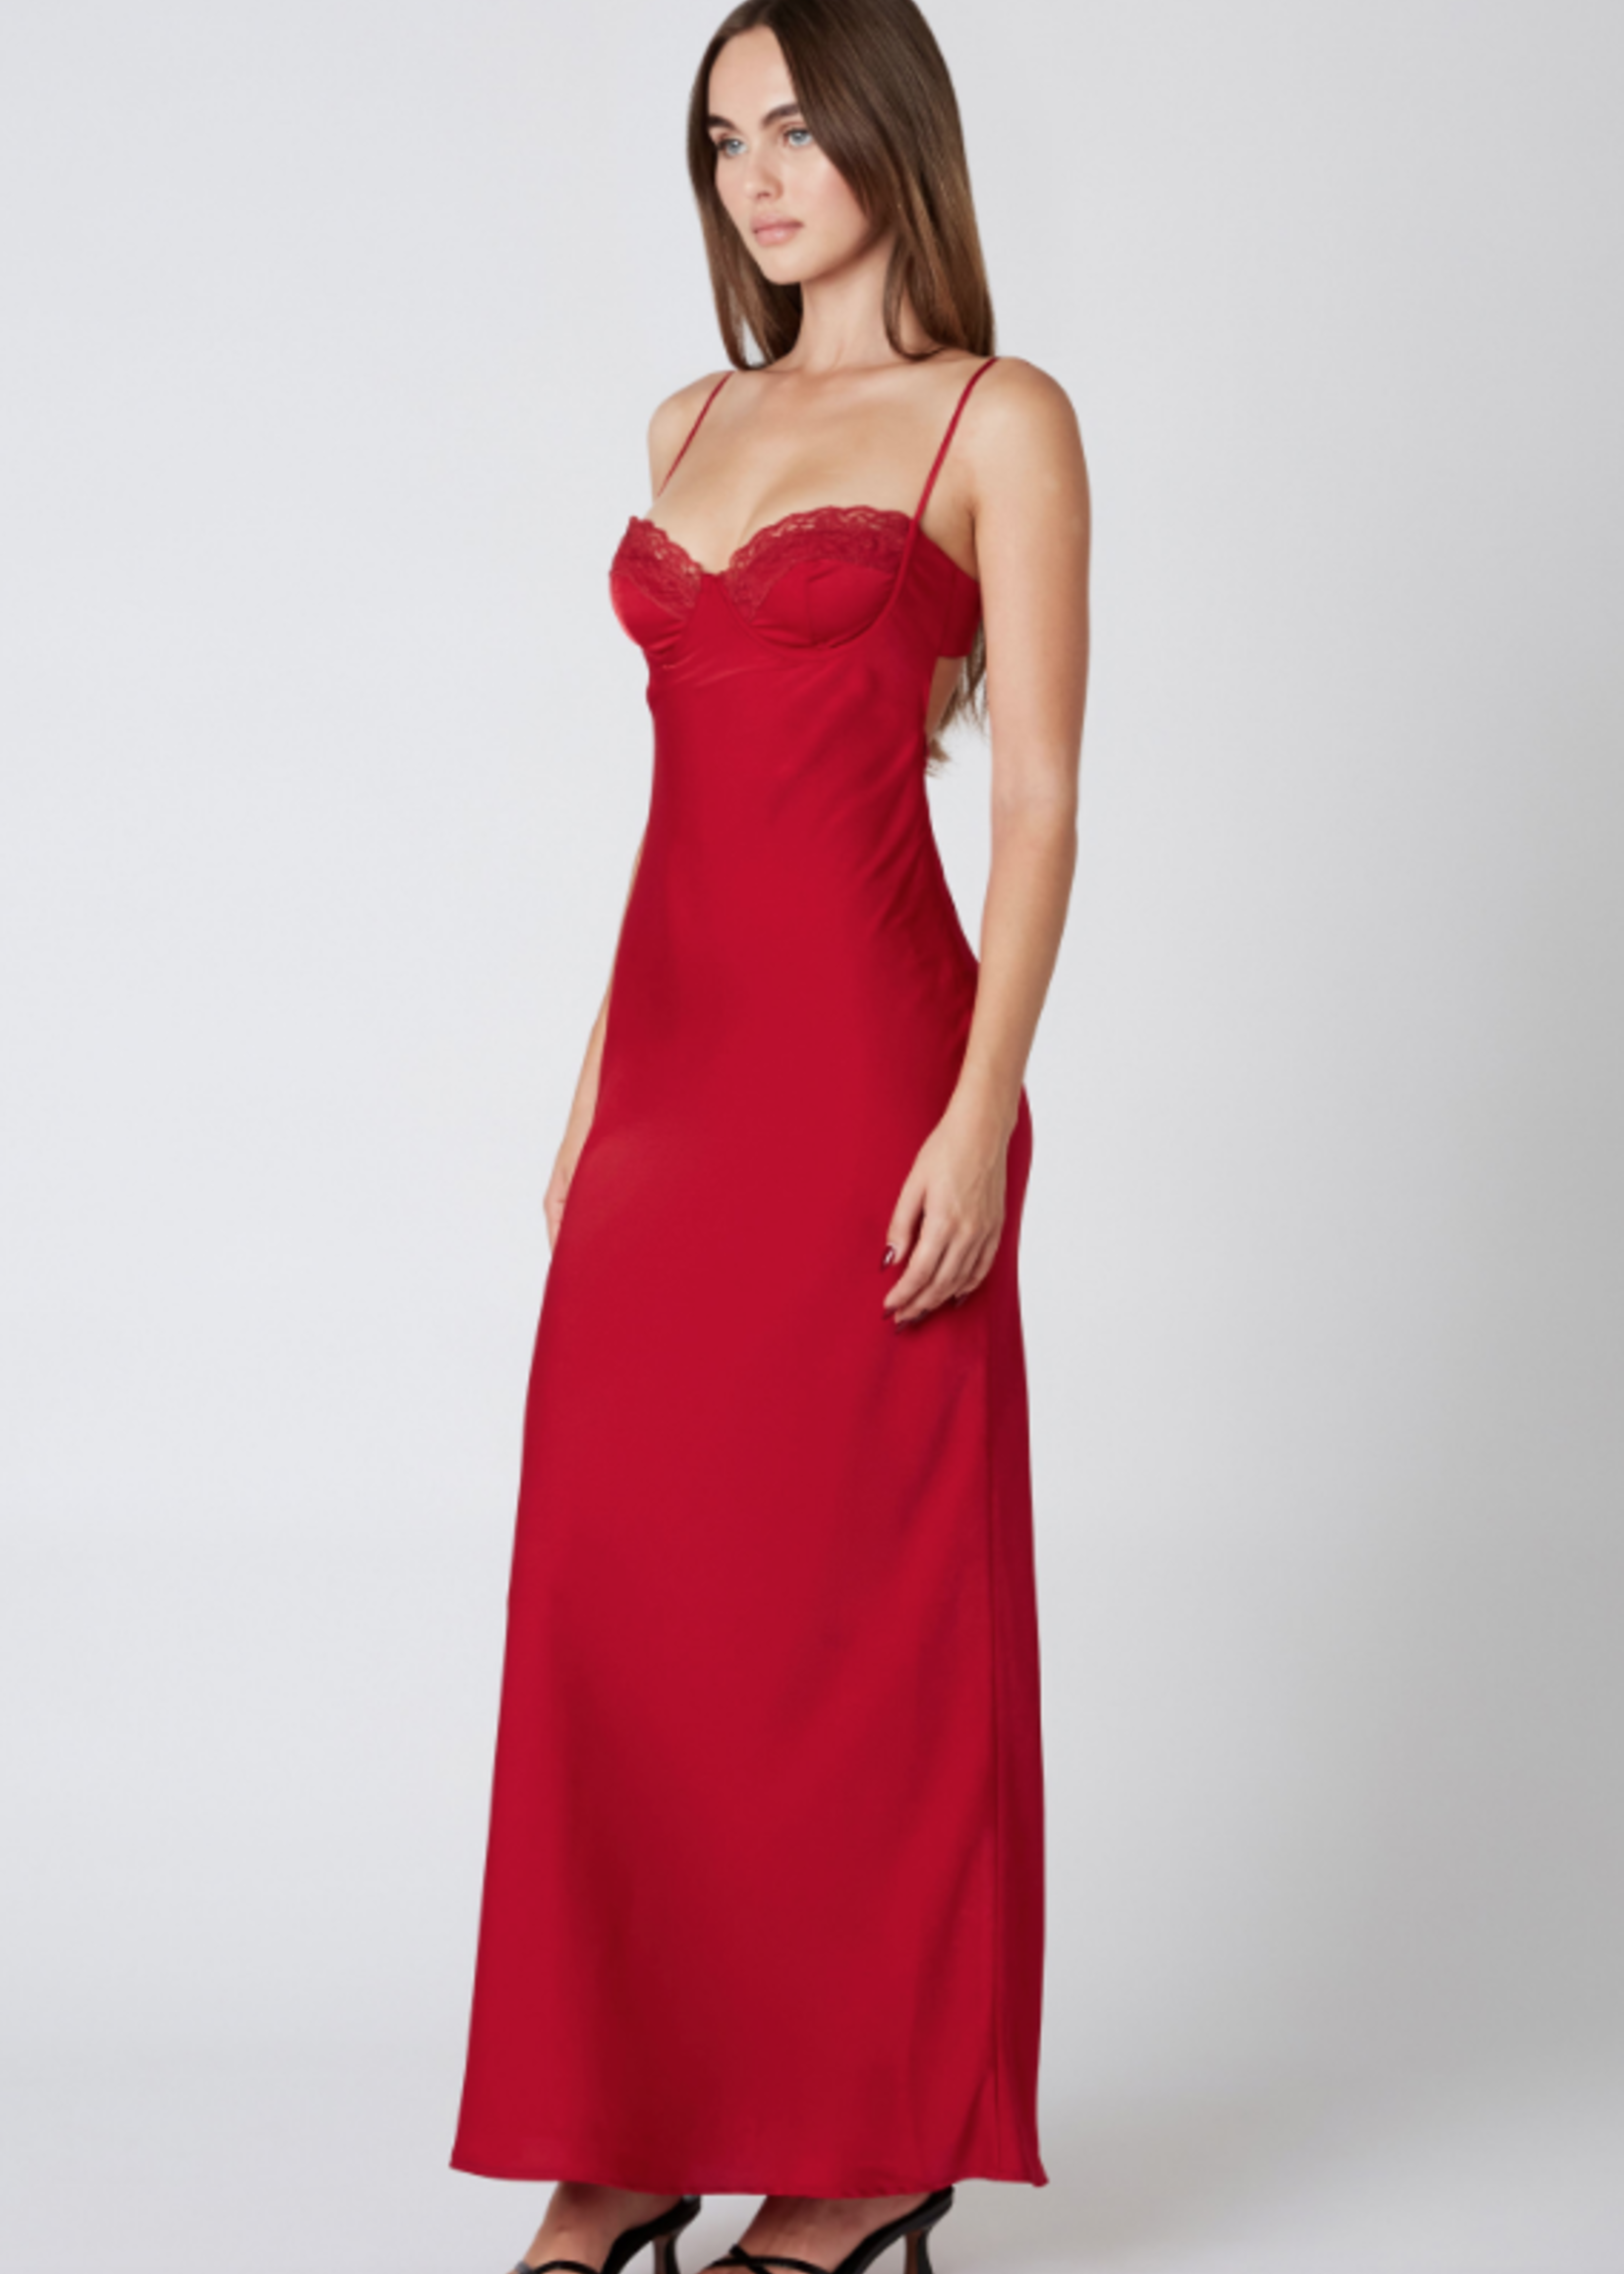 Falalalala Red Formal Dress